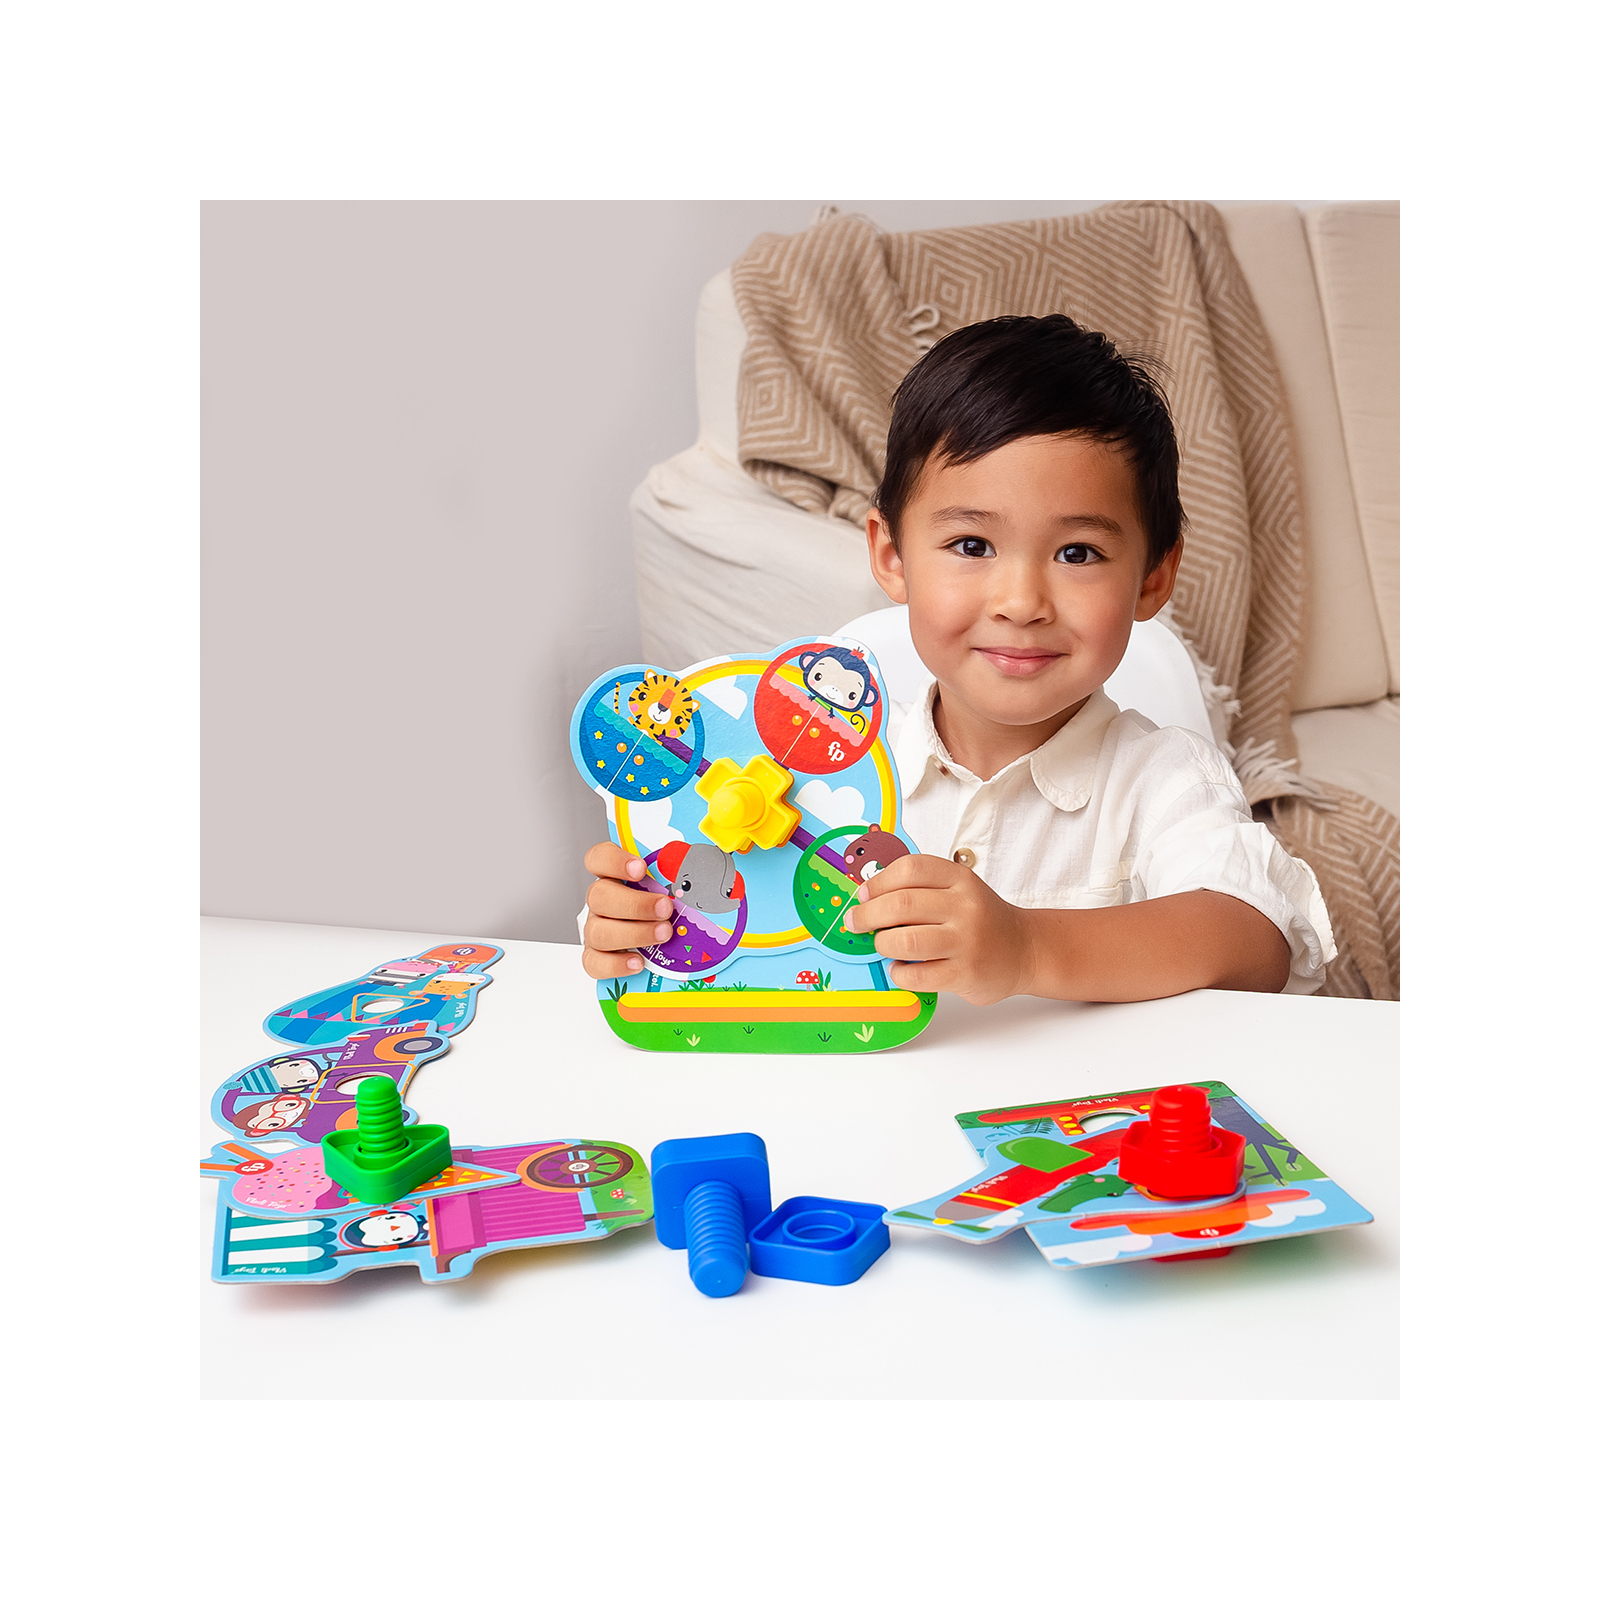 Развивающая игрушка Vladi Toys Fisher Price Парк развлечений для малышей (укр) (VT2905-21) изображение 4